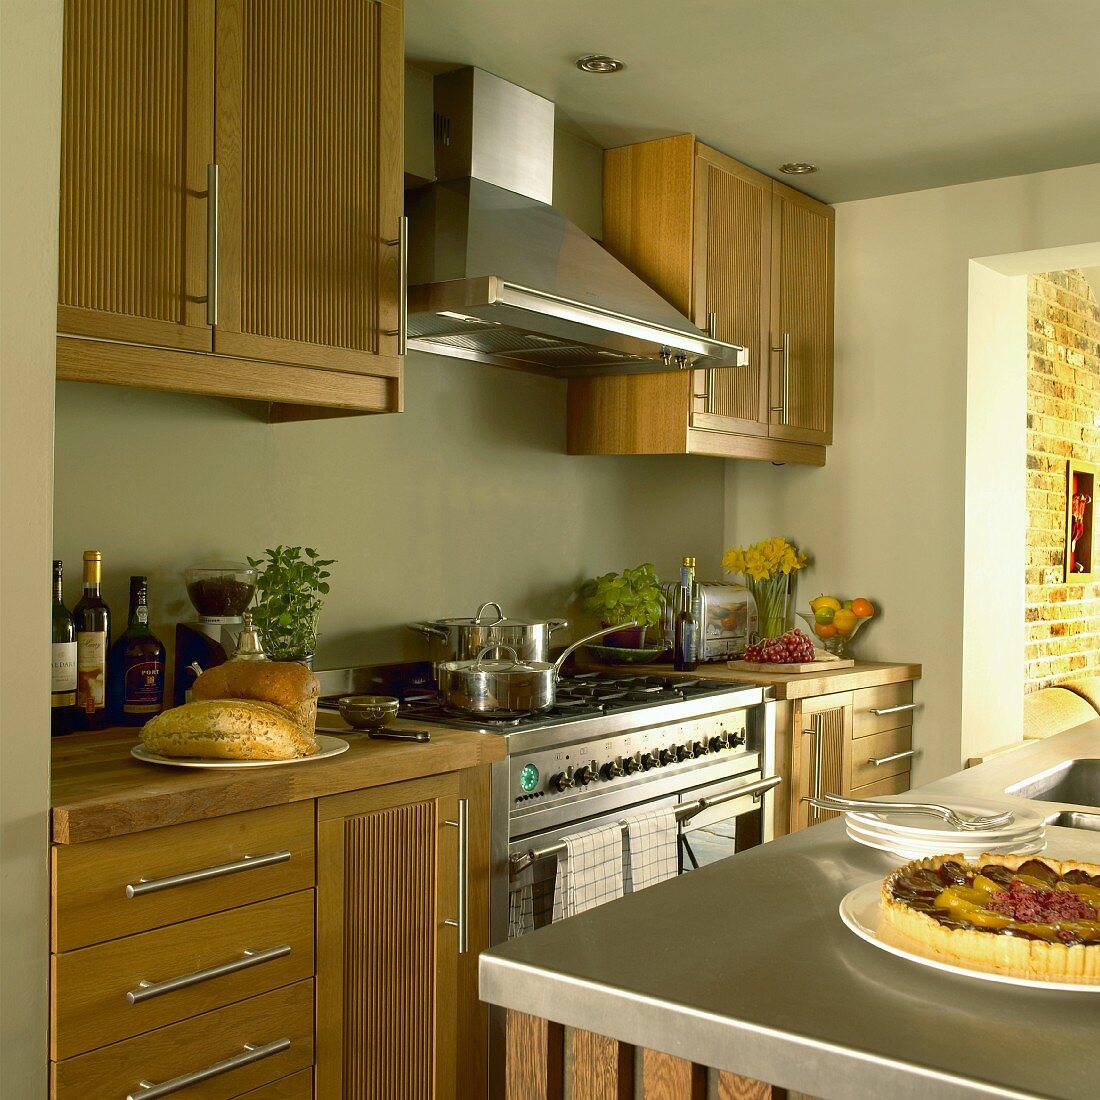 Küche im Landhausstil mit pastellgrünen Wänden, Holzmöbeln, Dunstabzugshaube über dem Herd und Mittelblock mit Spülbecken